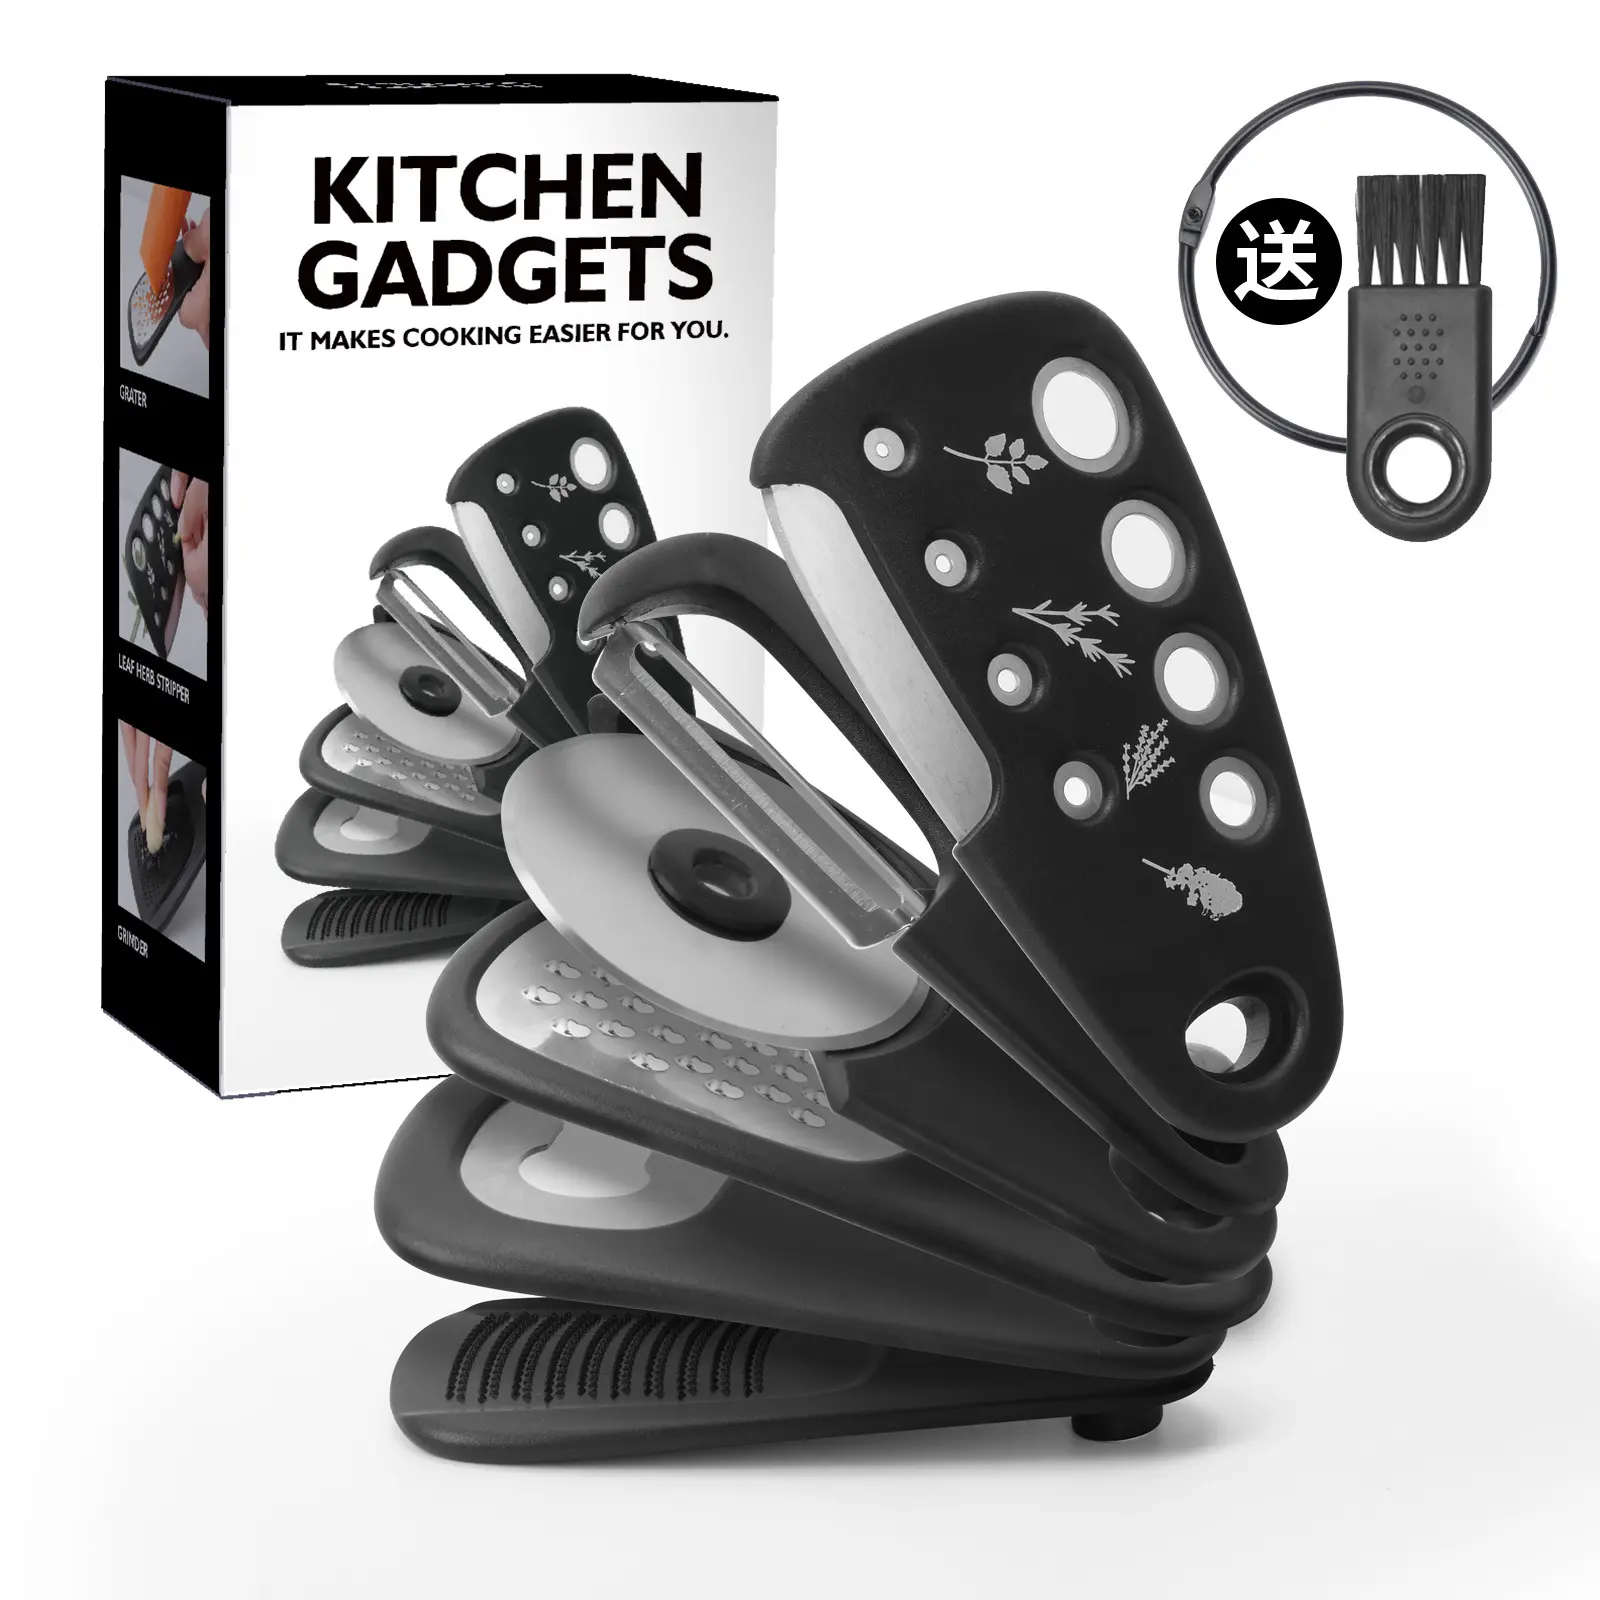 Groothandel Creatieve Keuken Gadgets Inklapbare 6 Stuks Set Pizza Cutter Kaas Rasp Dunschiller Blikopener Set